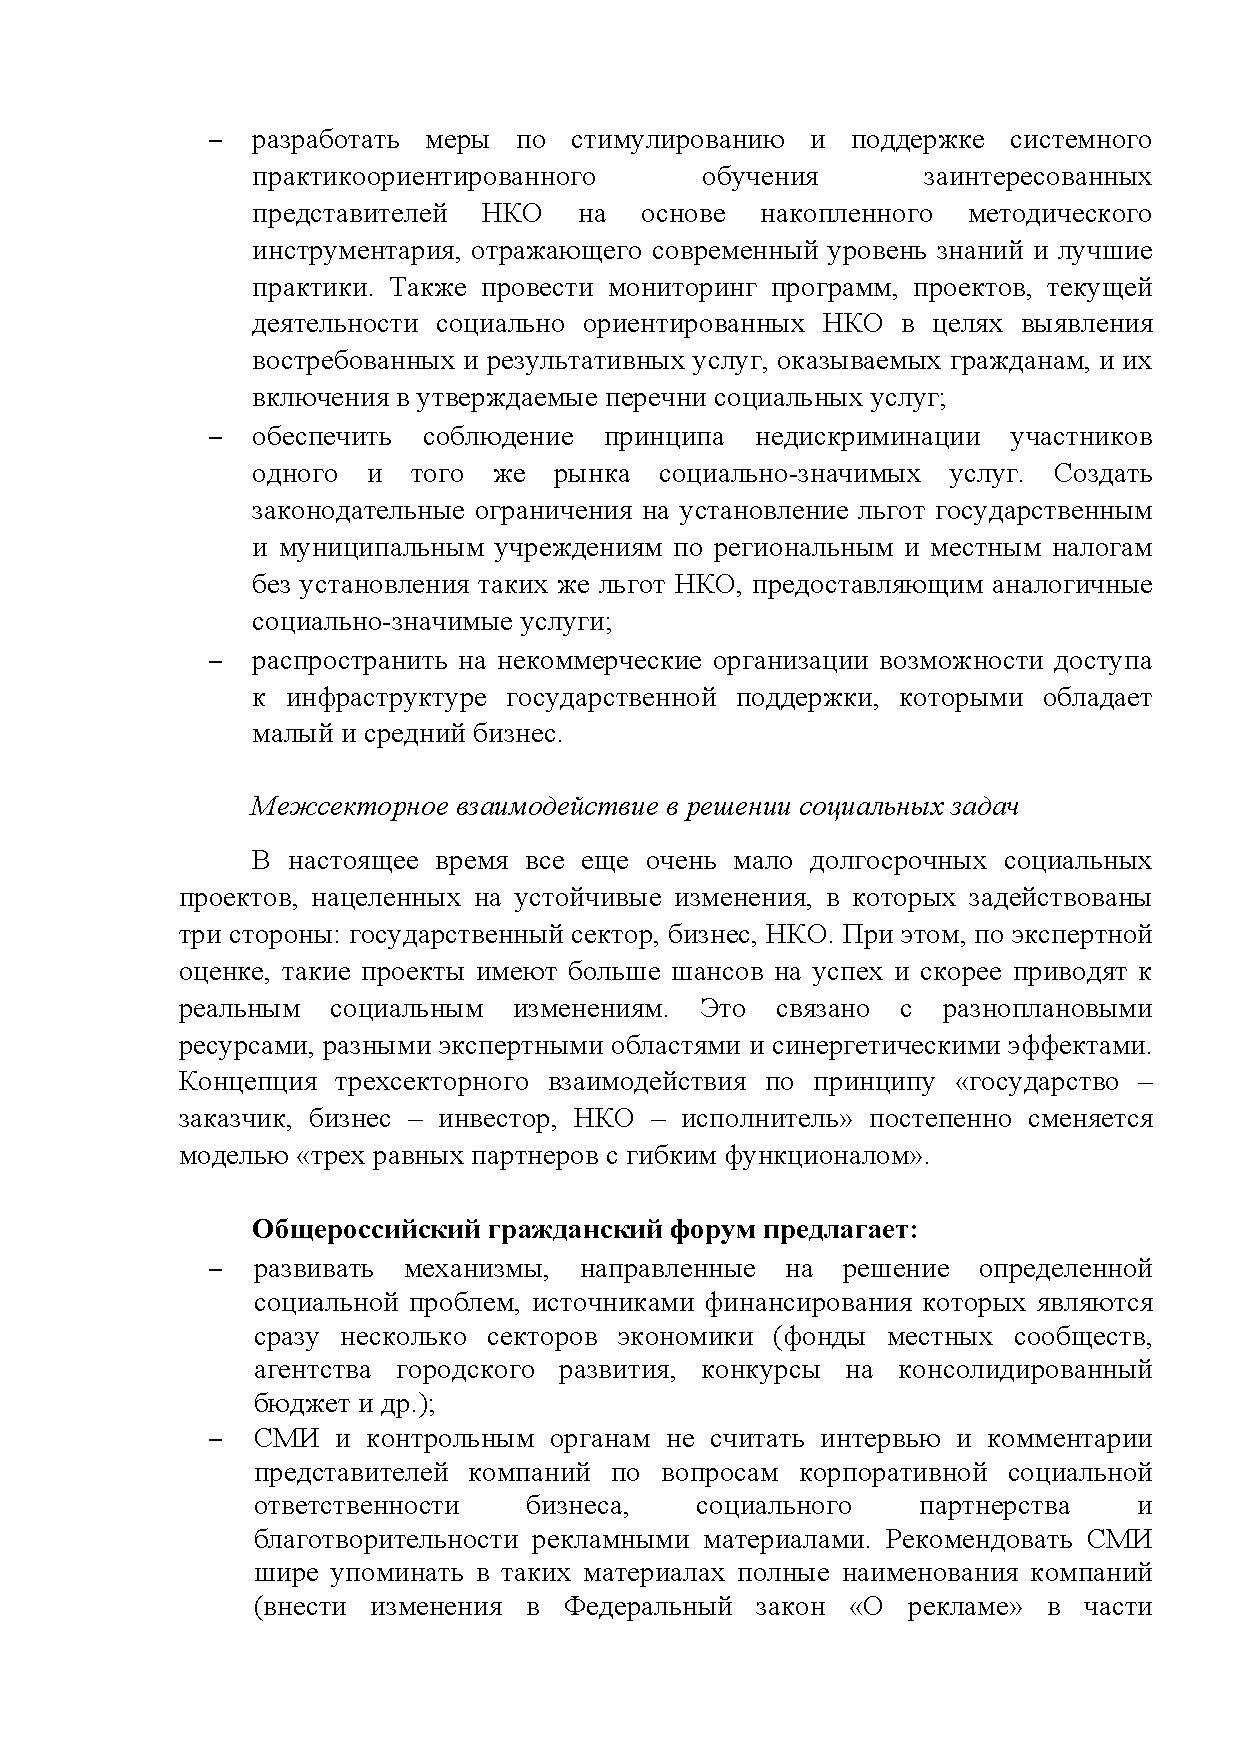  Опубликованы Предложения Общероссийского гражданского форума 2015 - фото 7